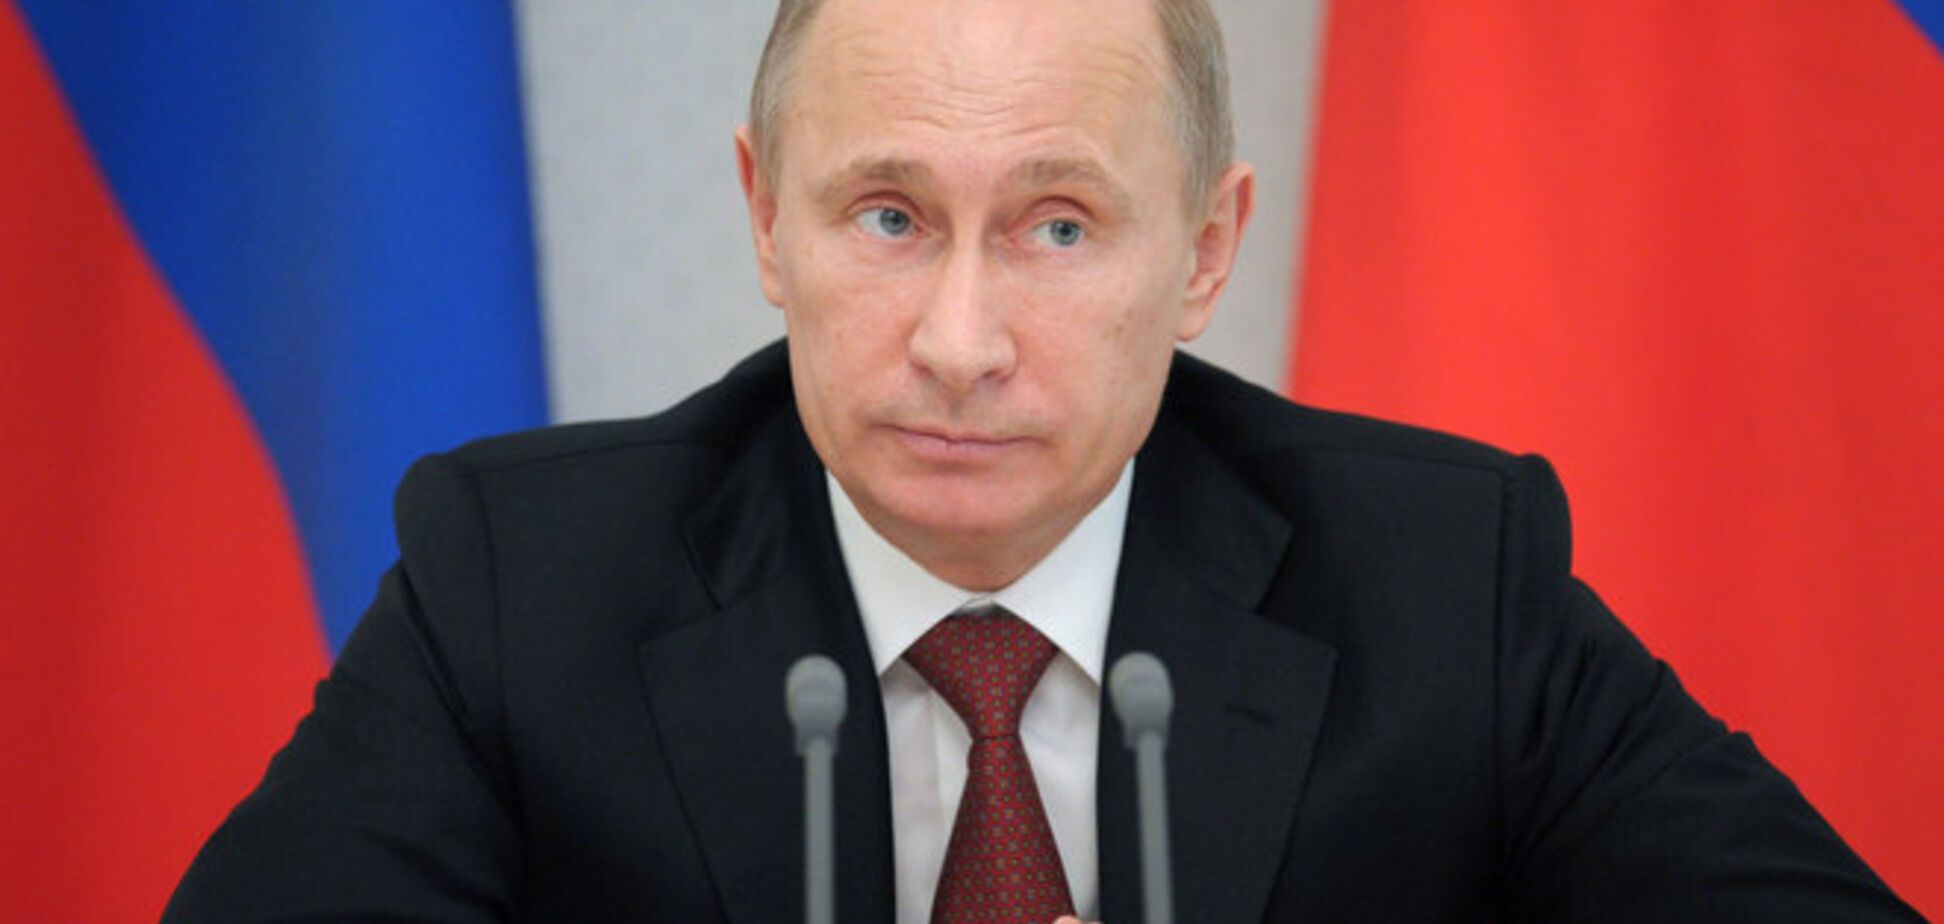 Путин пожелал новому главе УПЦ МП успехов в служении 'во благо полноты РПЦ'